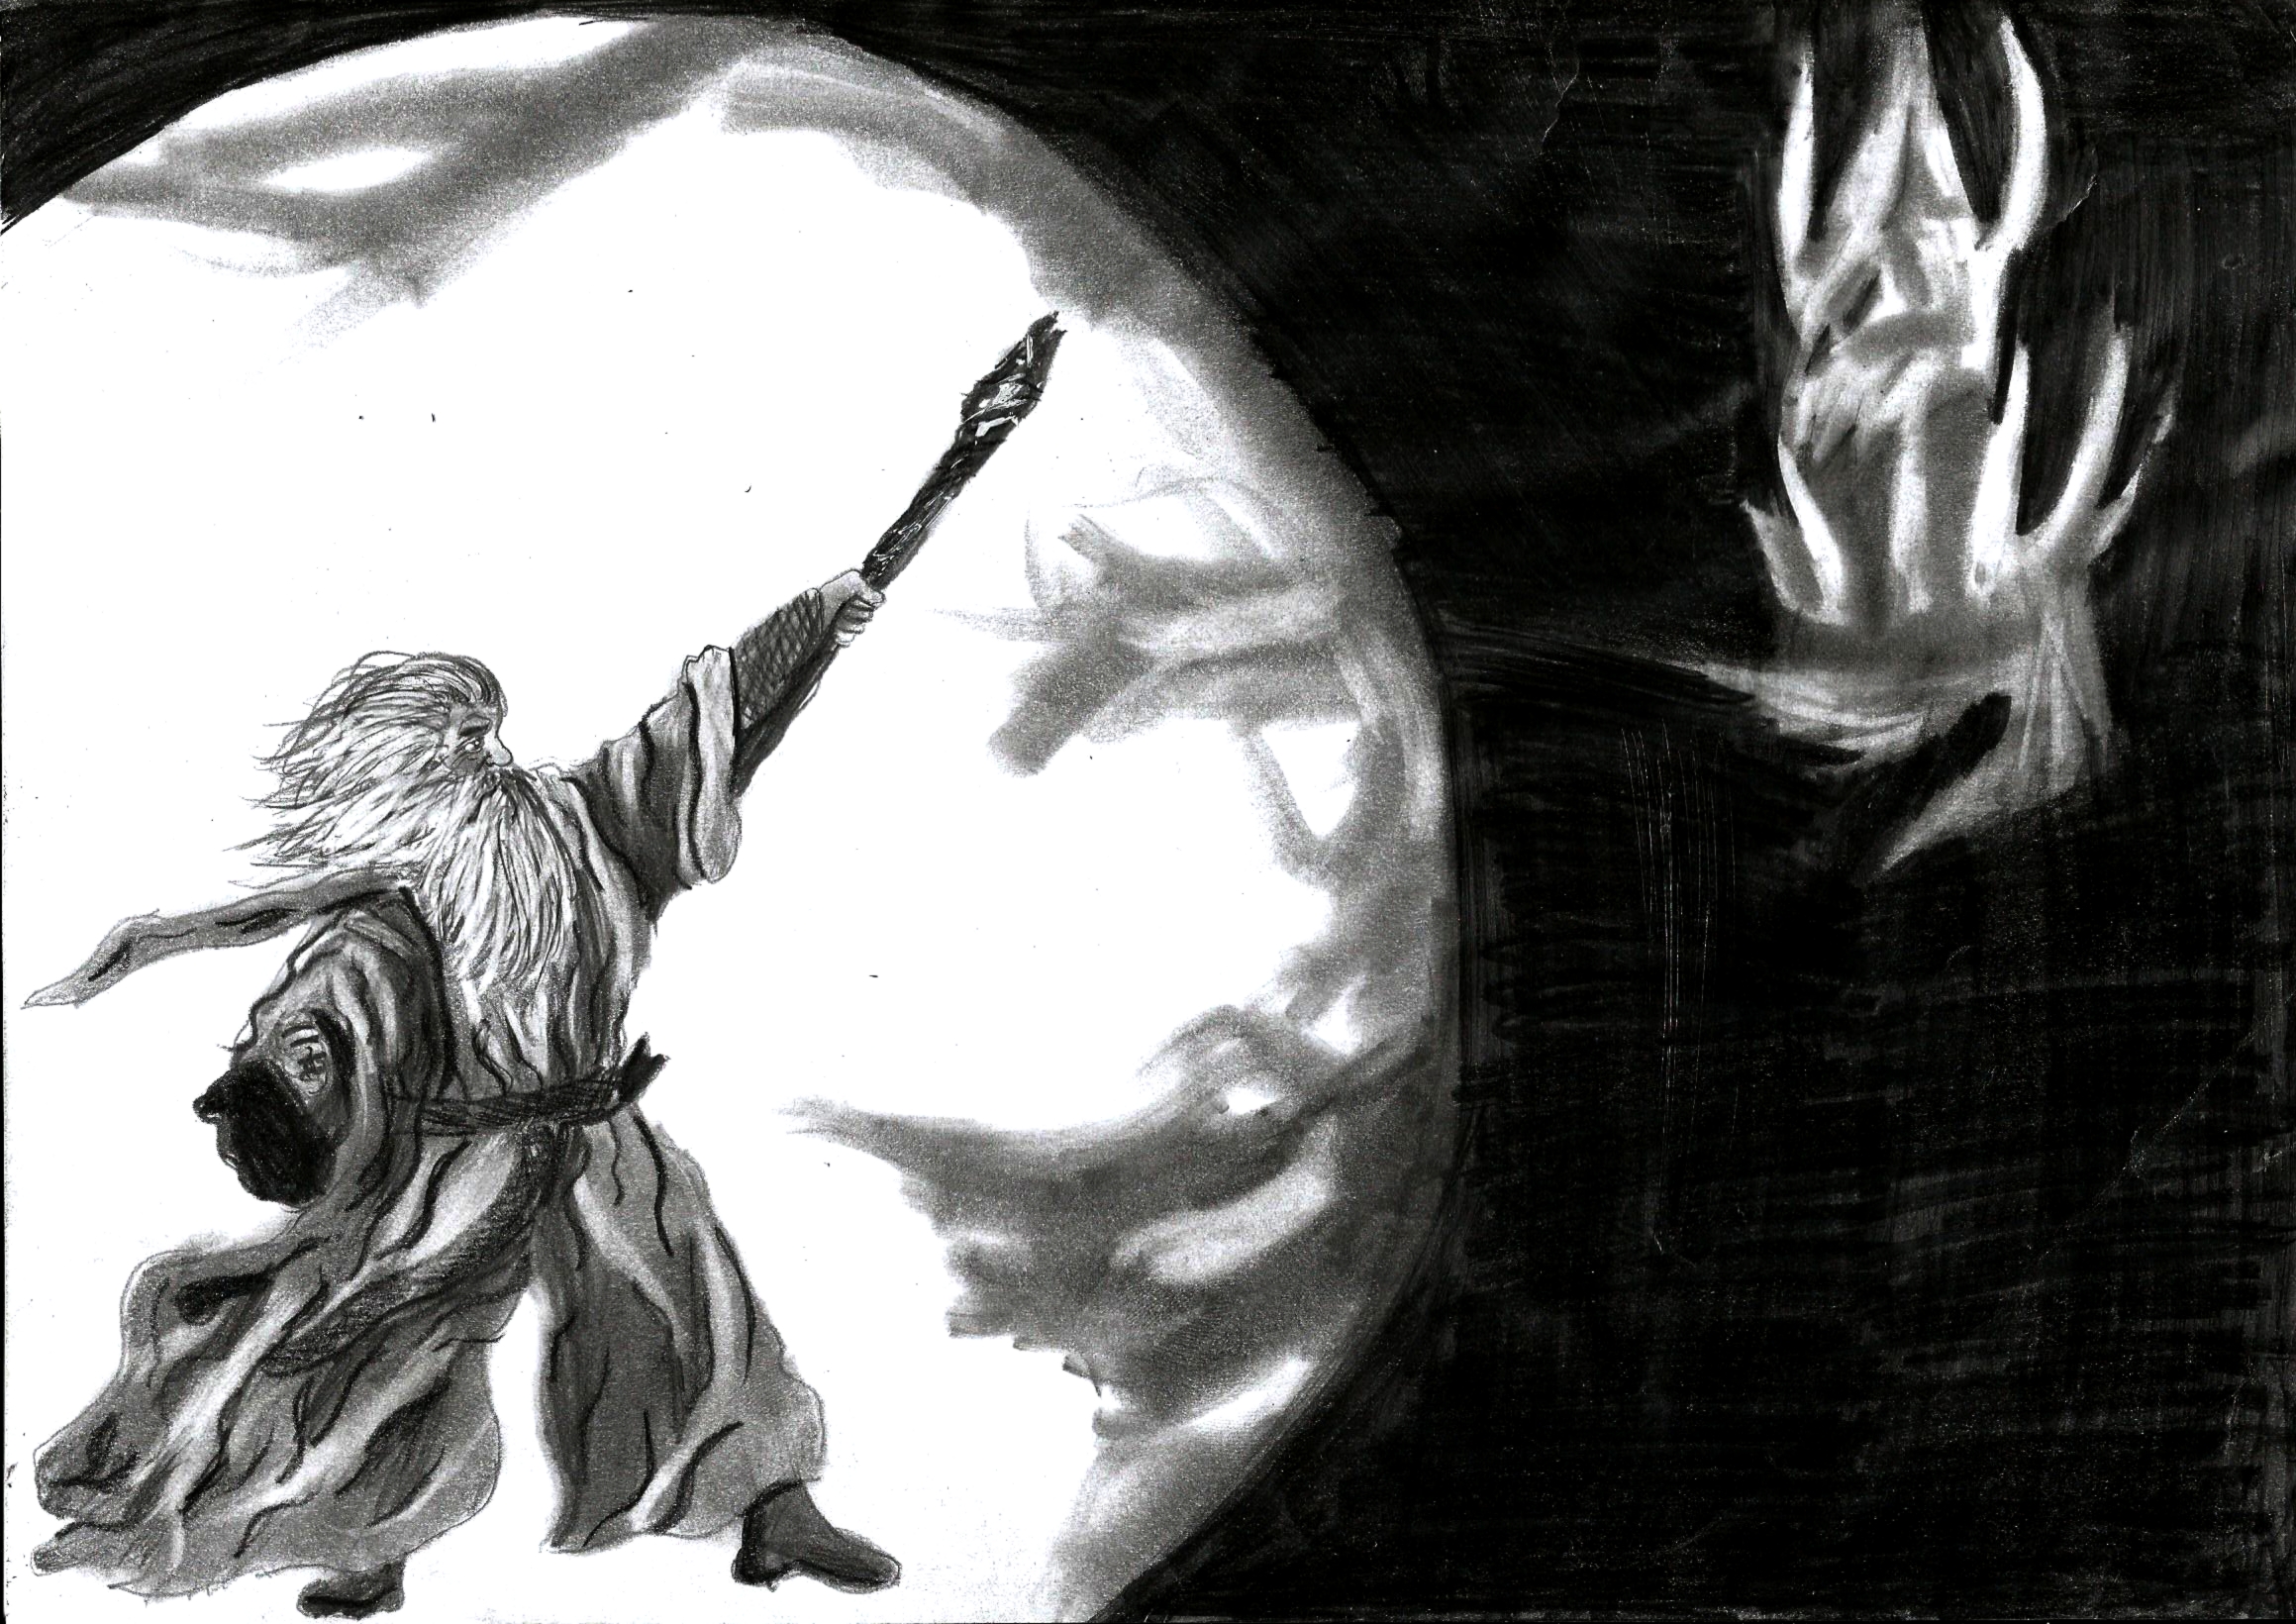 Gandalf VS. Aslan by INMH on DeviantArt